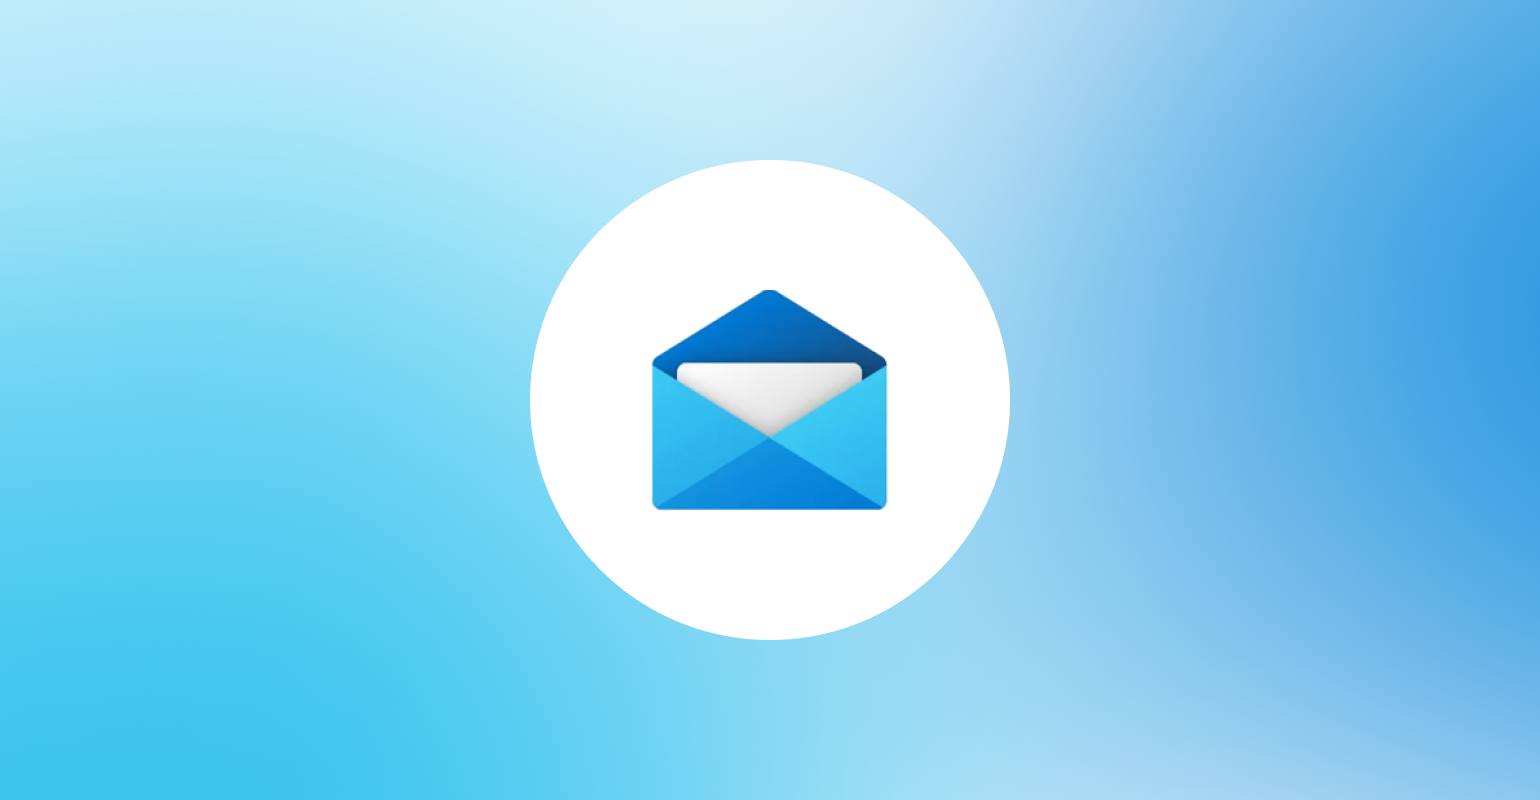 HTML Email là một trong những công nghệ thiết kế email phổ biến và được sử dụng rộng rãi trên toàn thế giới. Với Windows Mail, bạn sẽ tìm thấy rất nhiều tính năng tuyệt vời để tạo ra những email đẹp mắt và chuyên nghiệp hơn bao giờ hết. Tìm hiểu thêm về HTML Email và Windows Mail thông qua những hình ảnh đẹp và sống động này.